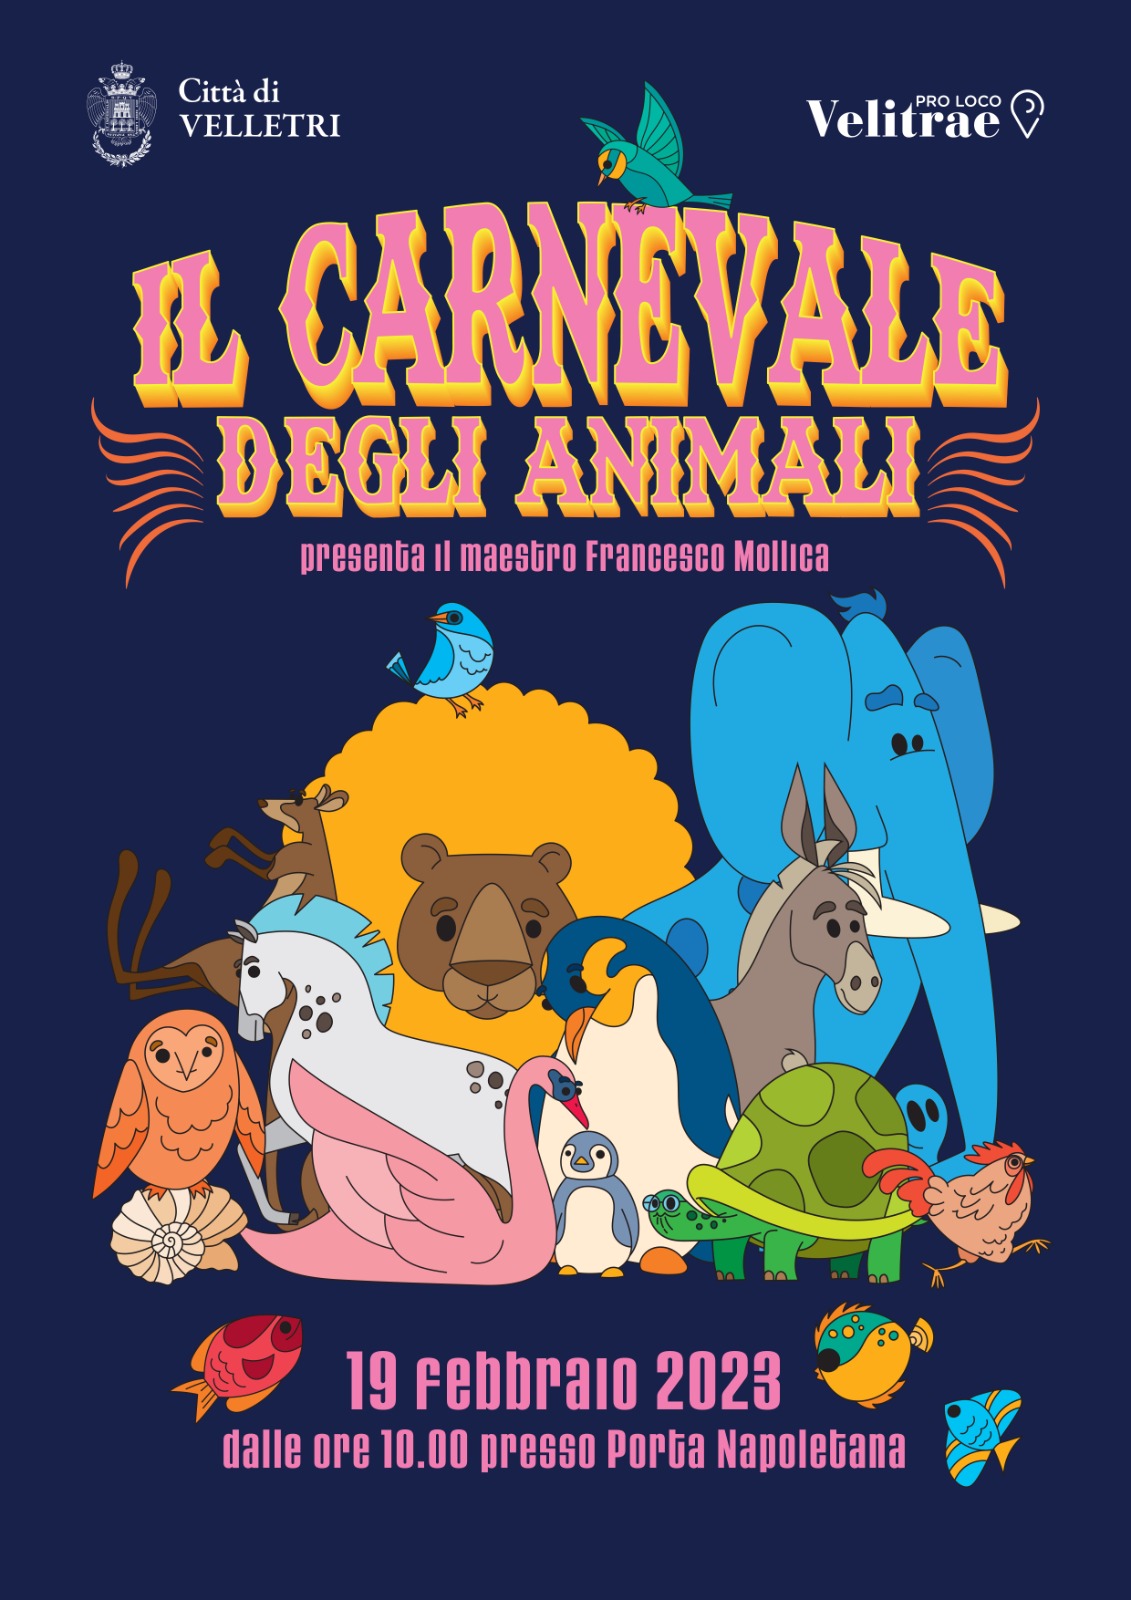 Il Carnevale degli animali” a Velletri